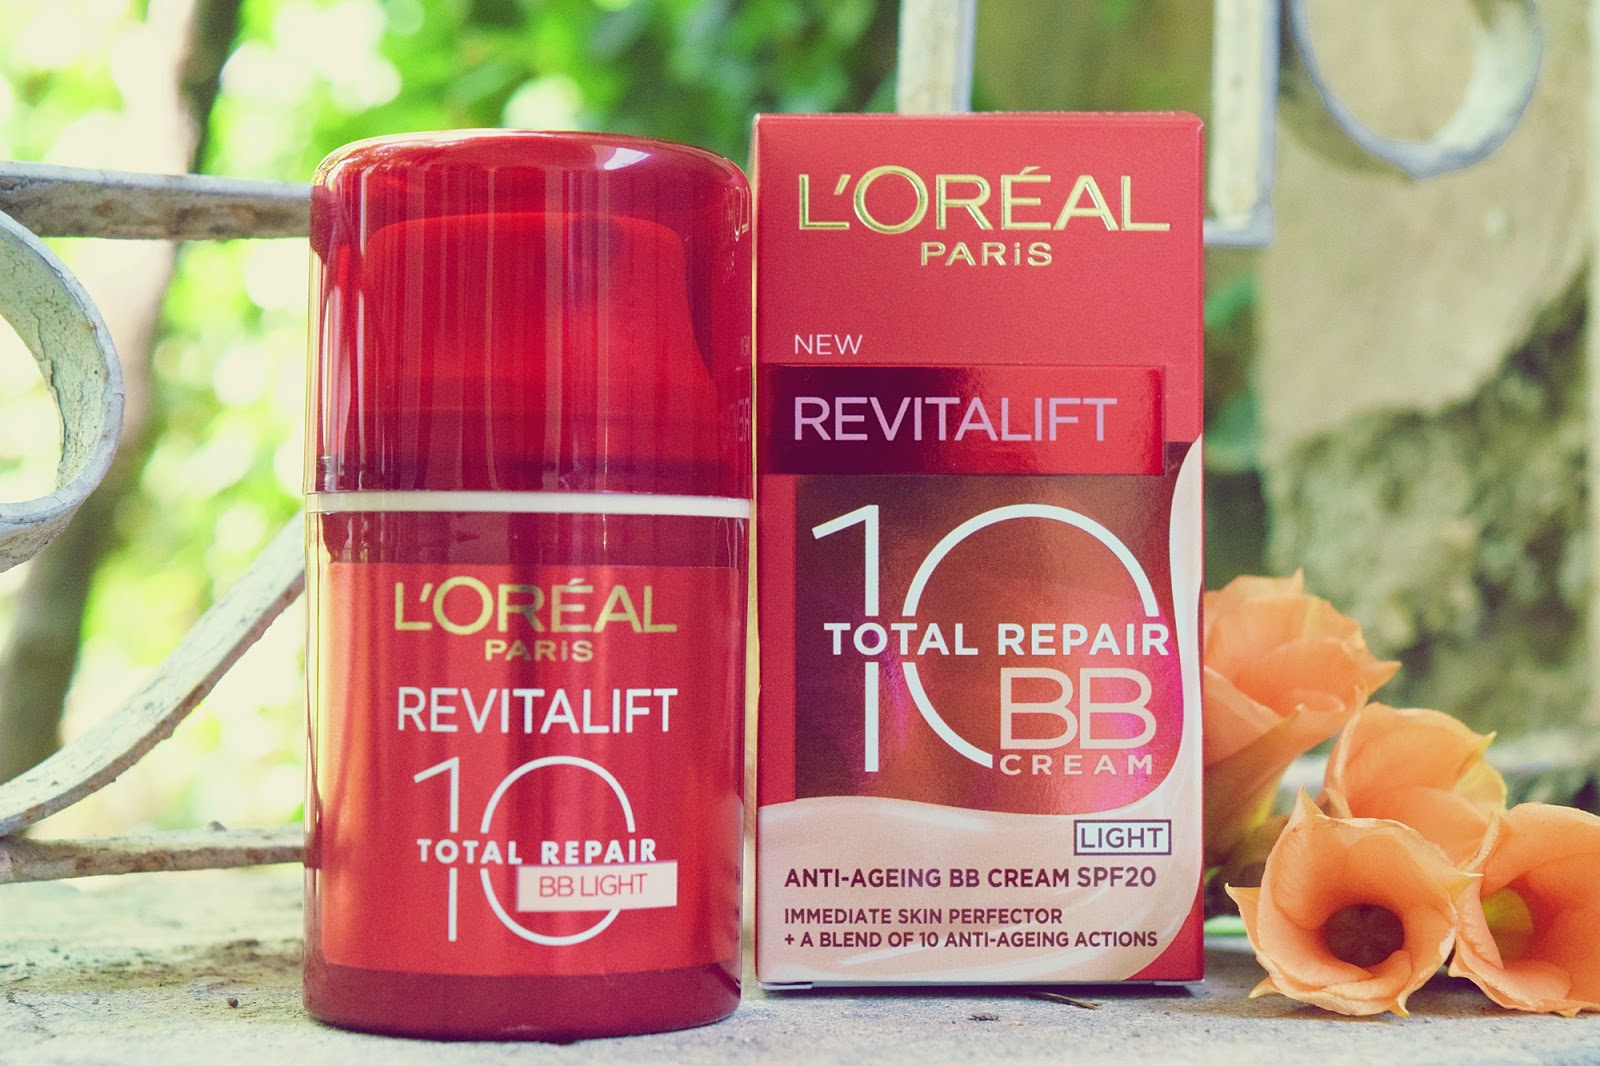 L'Oreal Revitalift Total Repair BB Cream